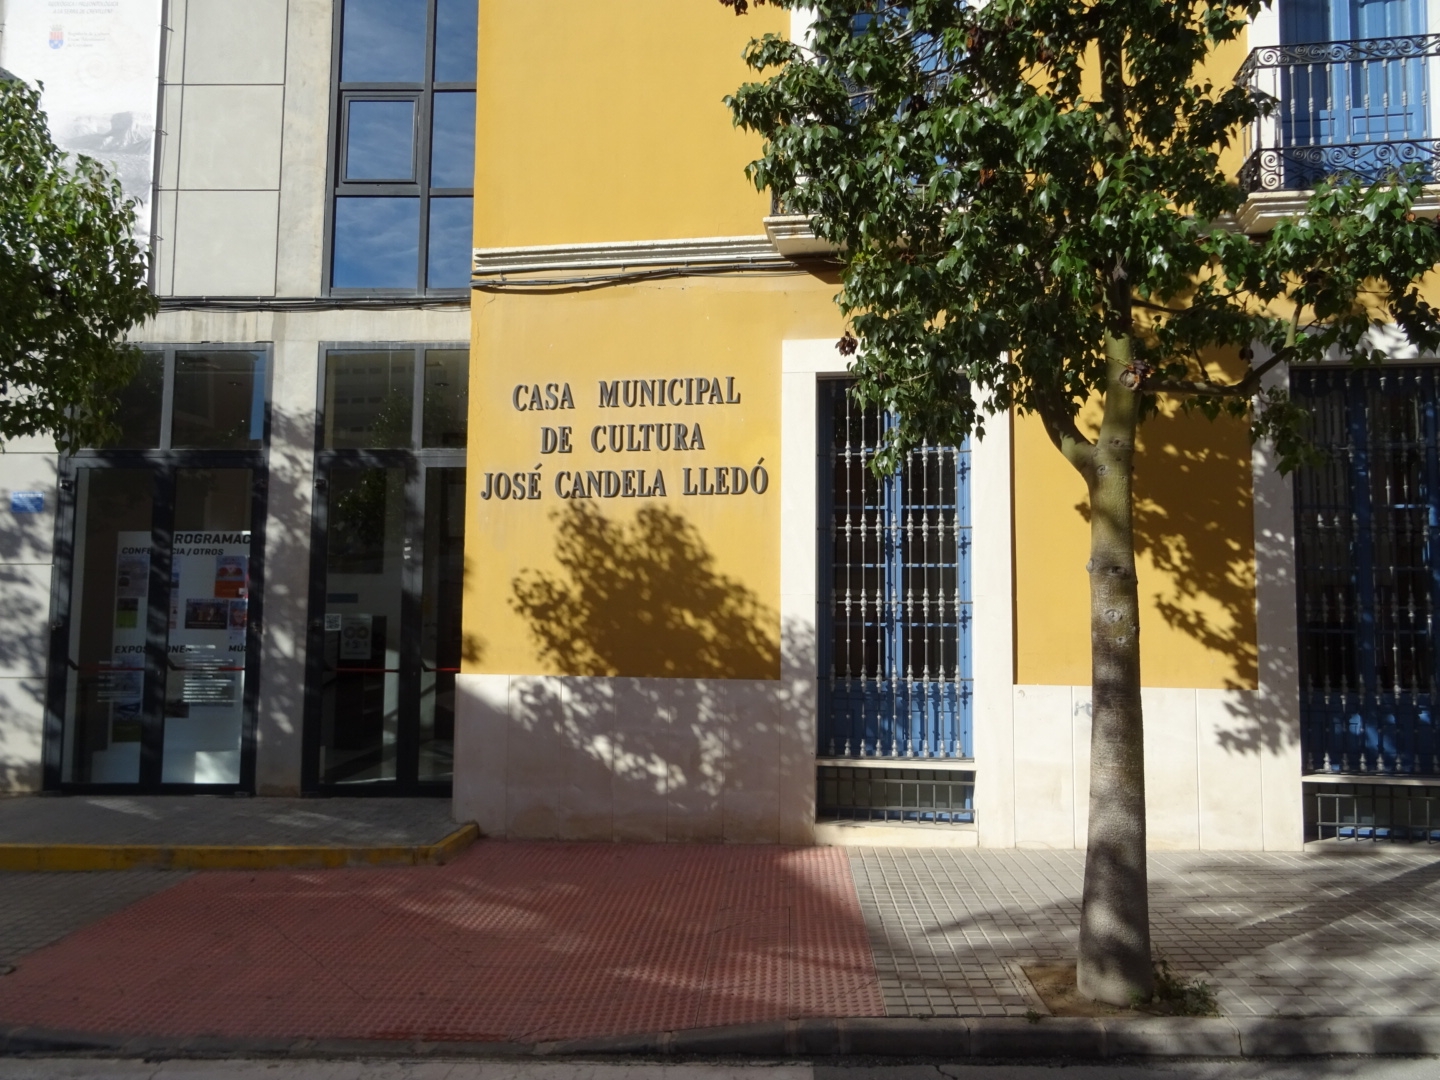 Casa Municipal de Cultura José Candela Lledó - Concejalía de Cultura y Fiestas. Crevillente